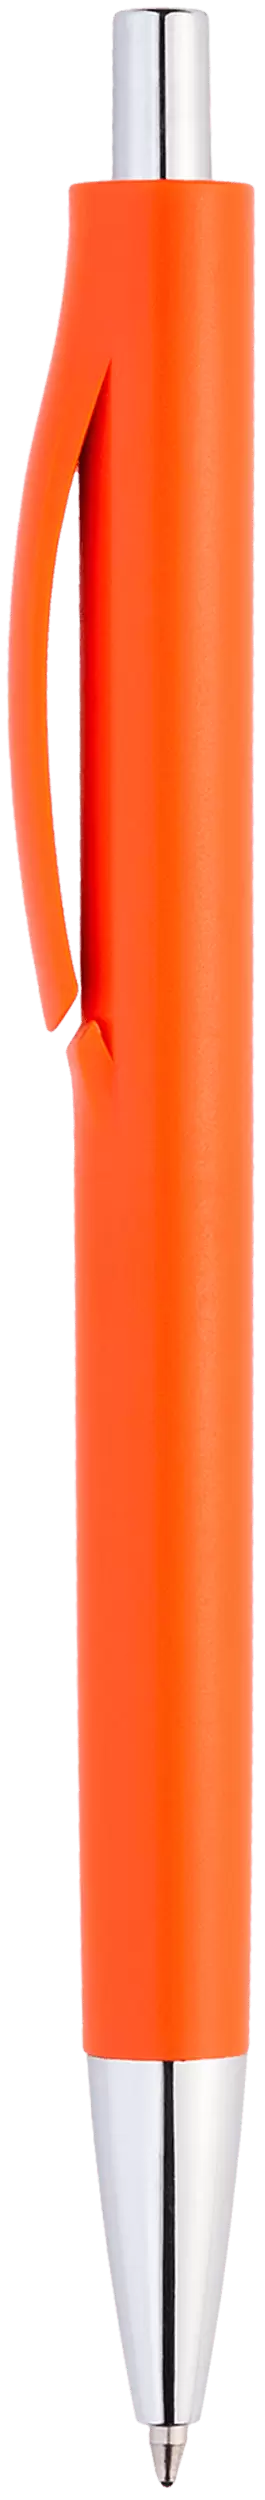 Ручка IGLA CHROME Оранжевая 1032-05